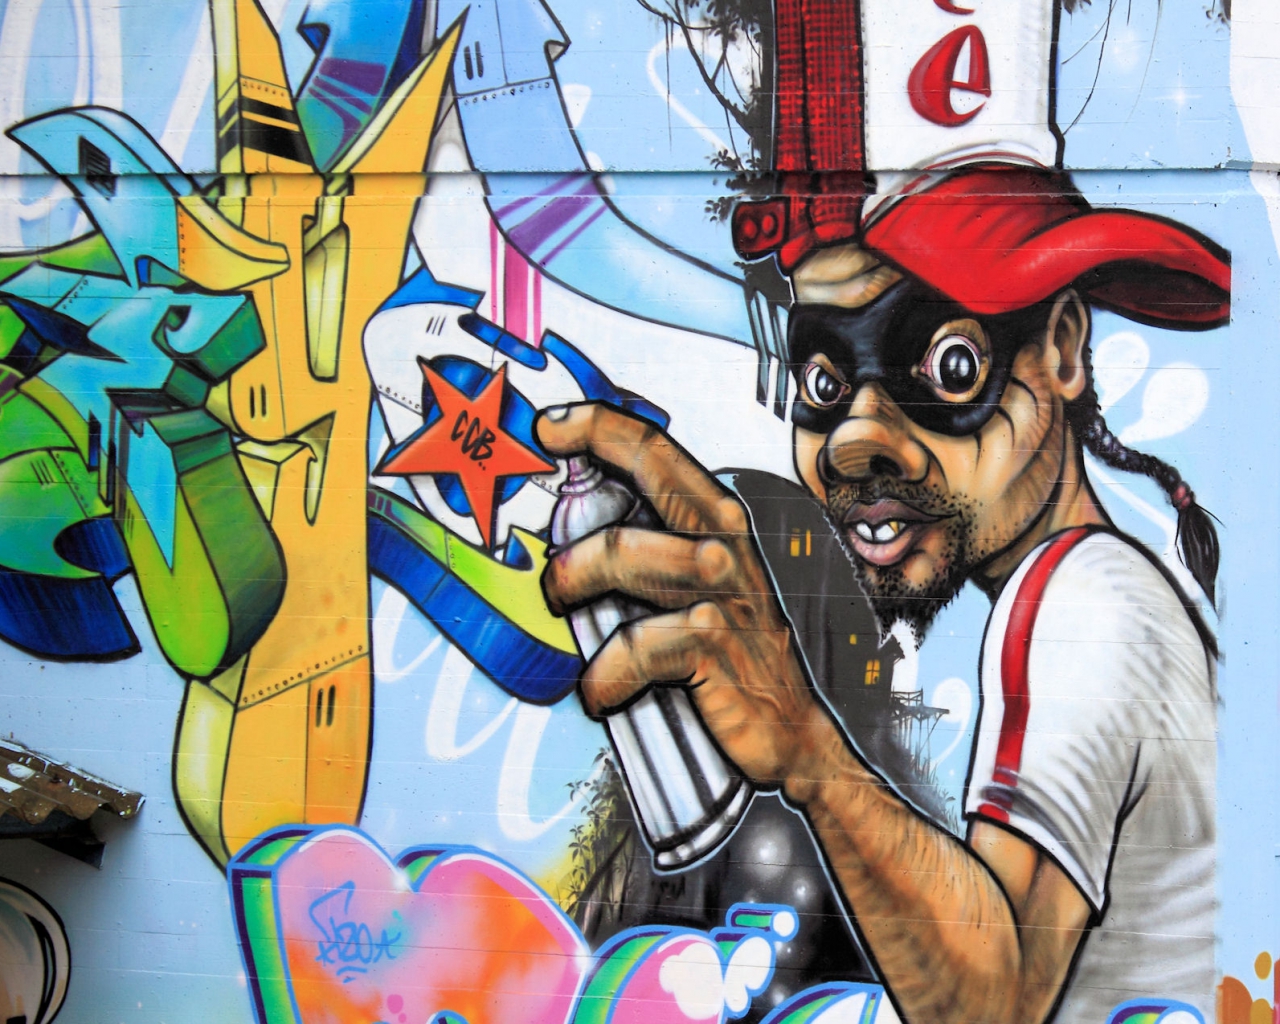 gravity tembok wallpaper,cartoon,graffiti,art,mural,street art